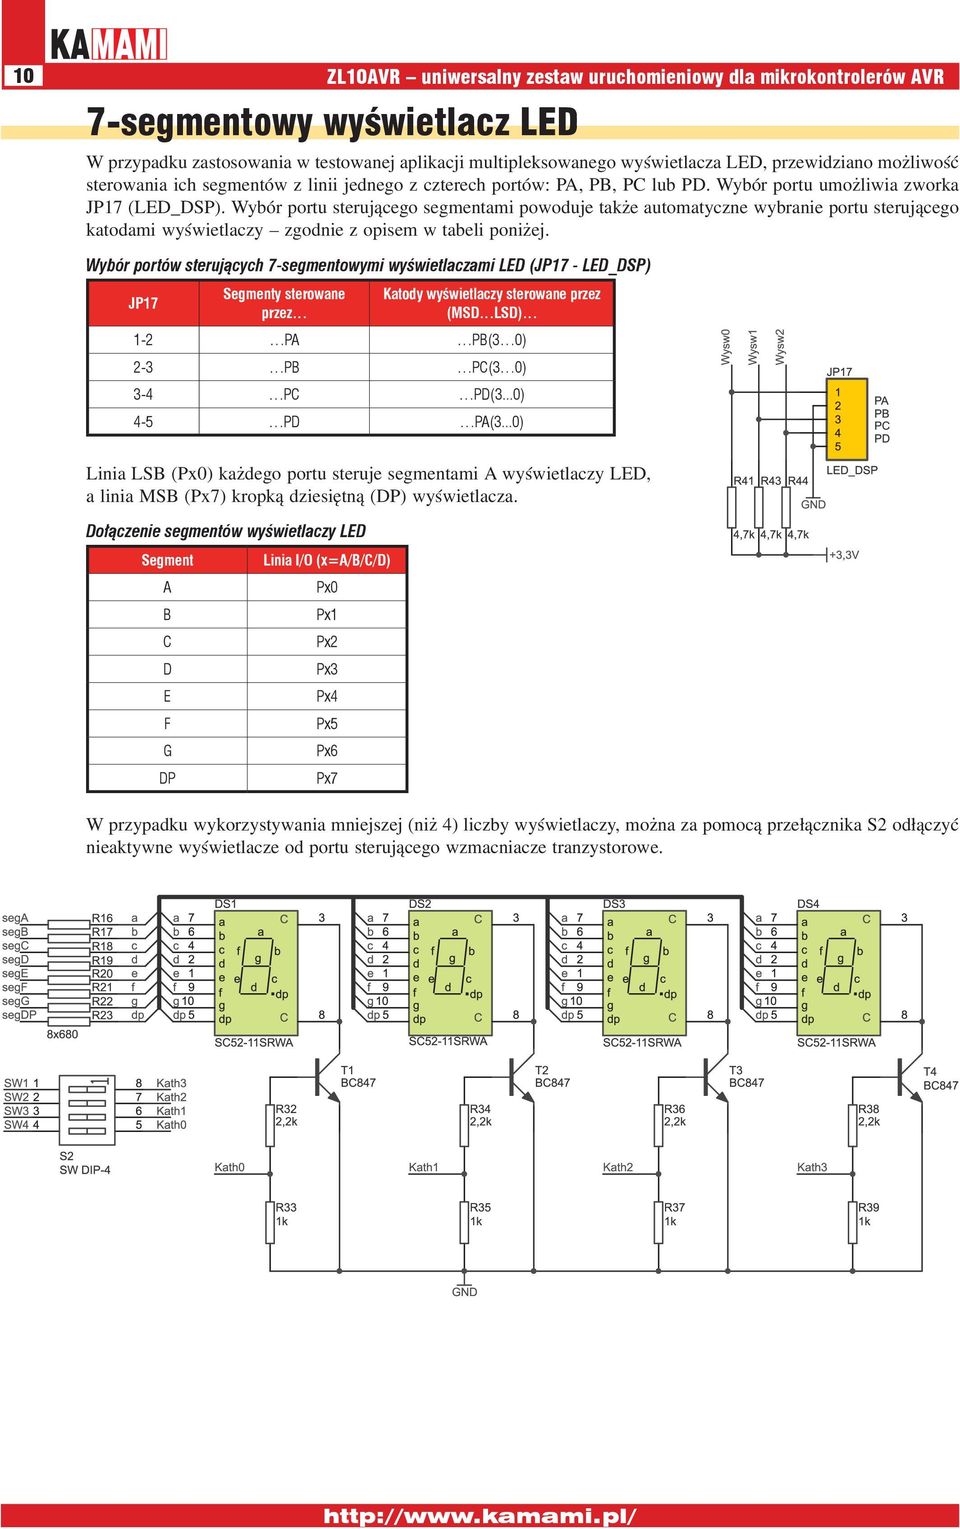 Wybór portu sterującego segmentami powoduje także automatyczne wybranie portu sterującego katodami wyświetlaczy zgodnie z opisem w tabeli poniżej.